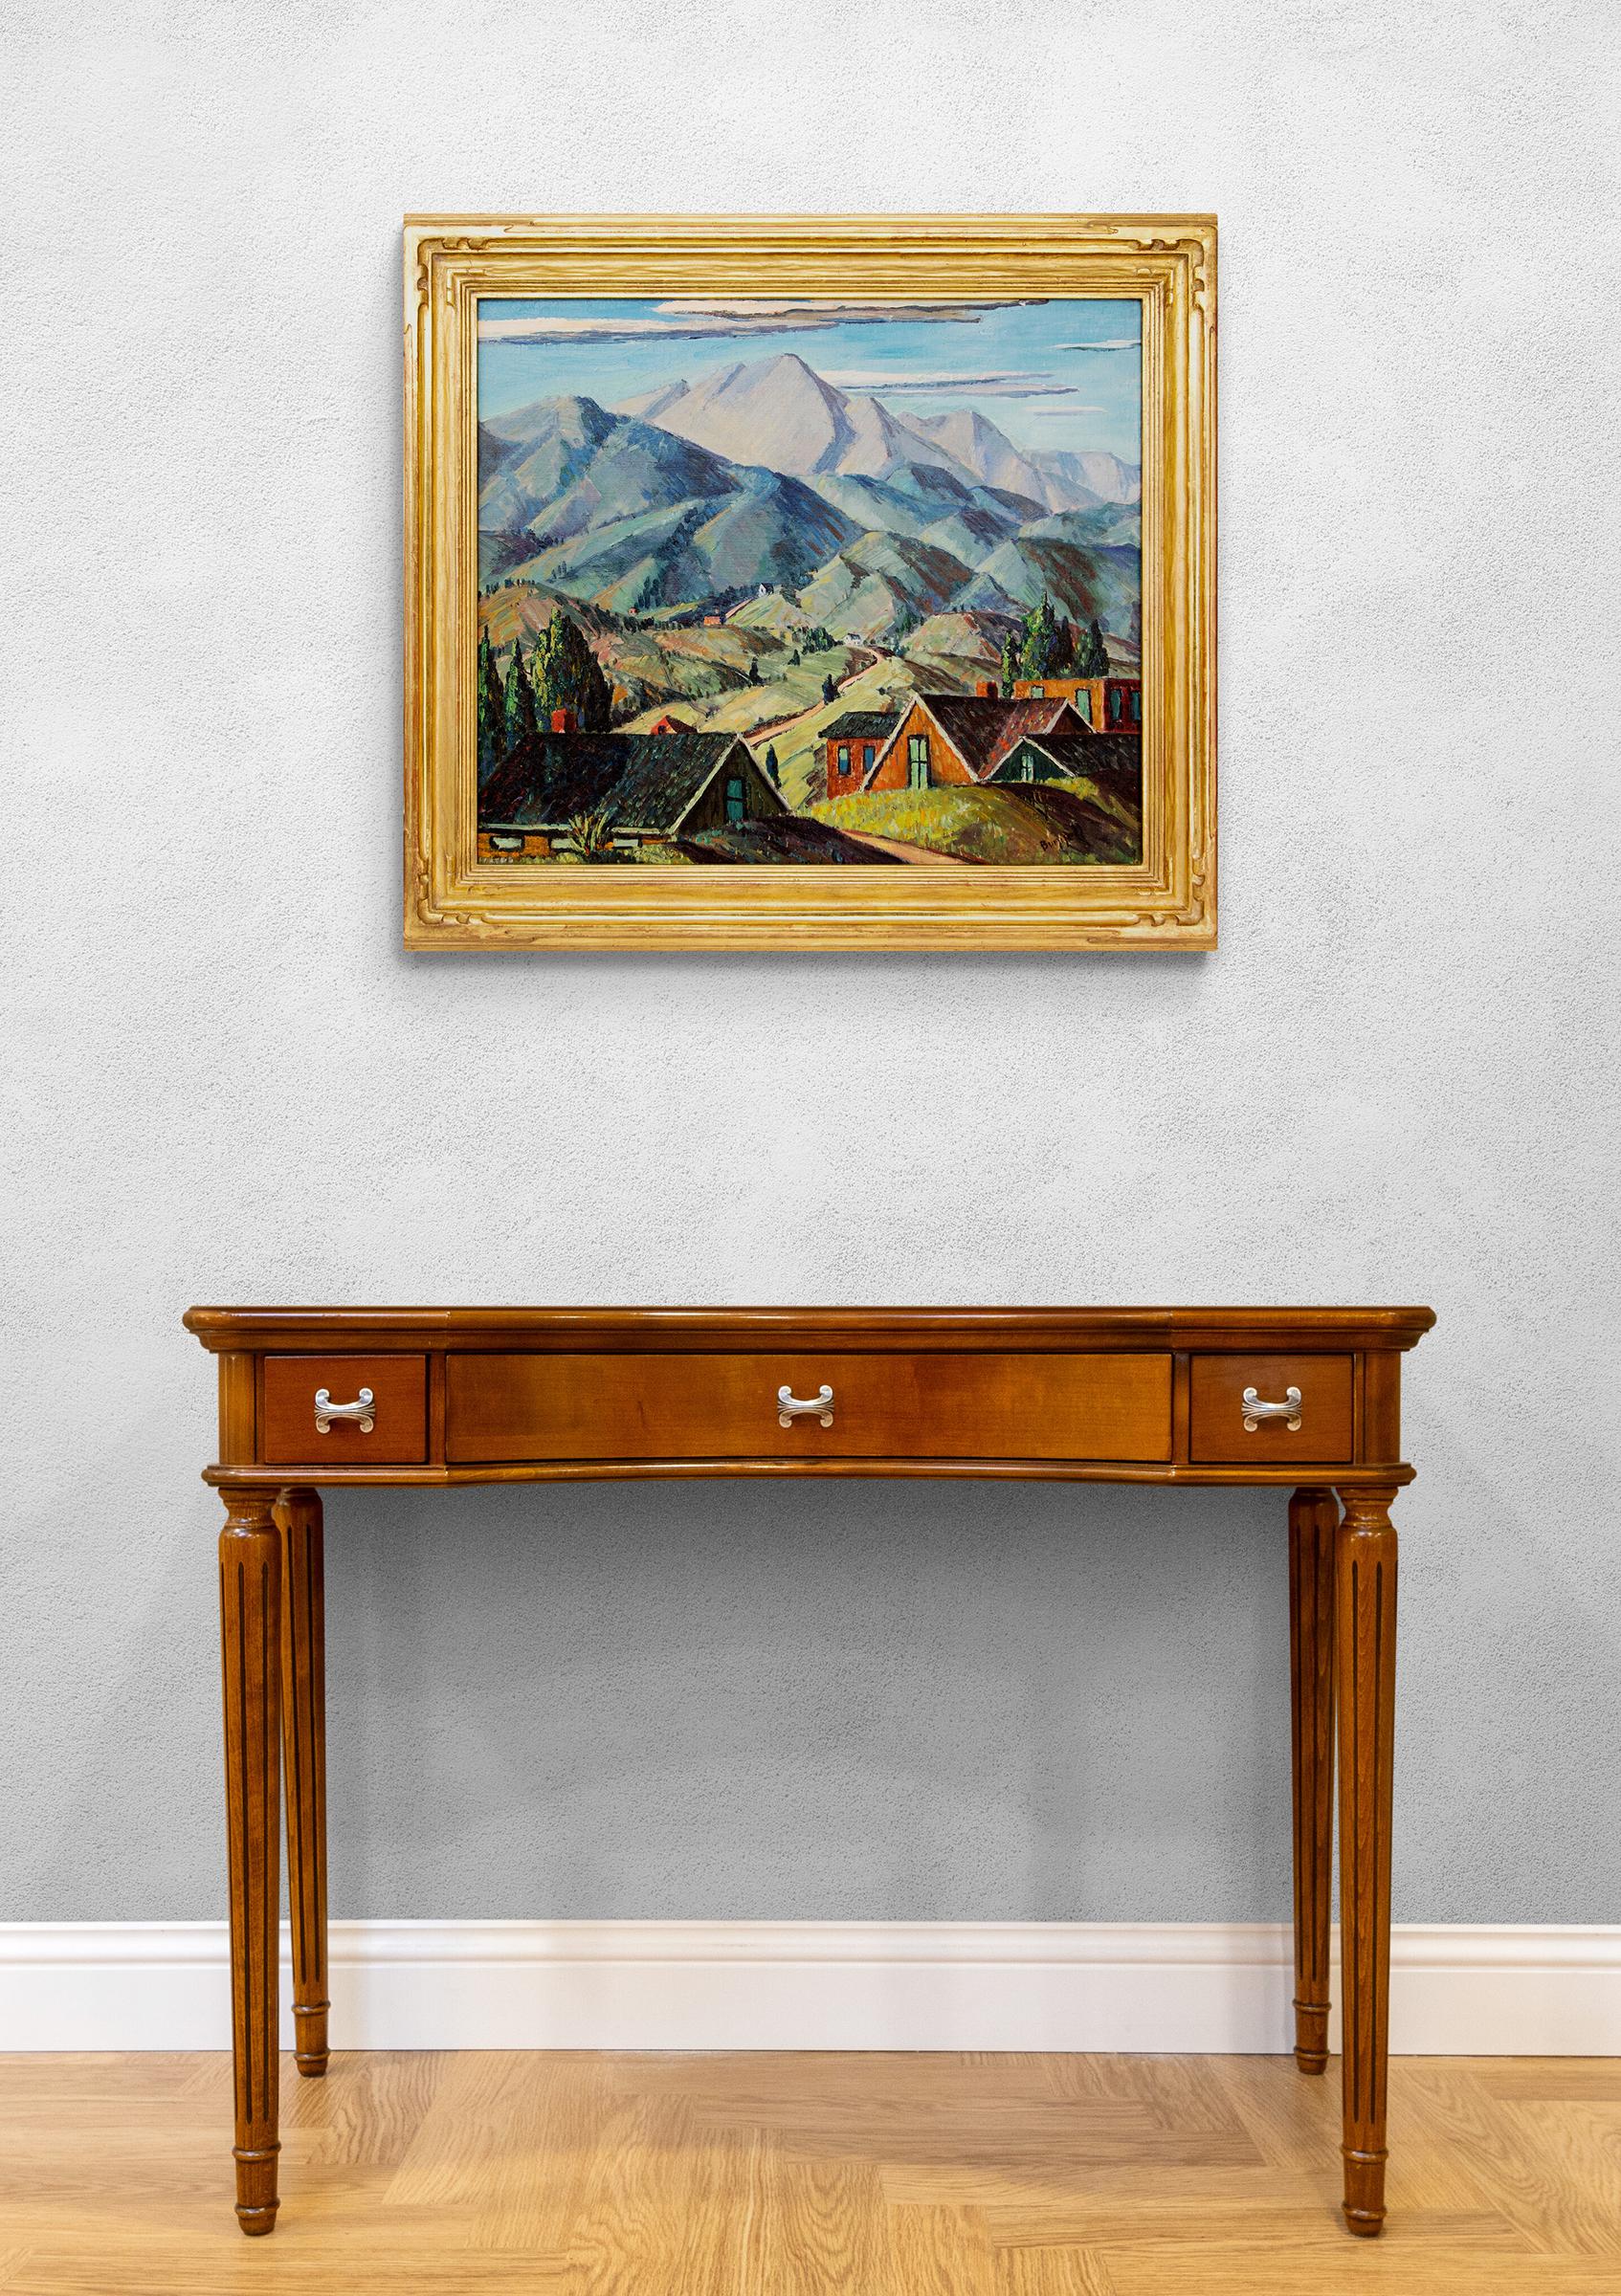 Ölgemälde auf Leinwand von Charles Ragland Bunnell (1897-1968) um 1928-1929, das ein Manitou in Colorado mit Blick auf den Pikes Peak zeigt. Berglandschaftsmalerei des frühen 20. Jahrhunderts. Die Außenmaße betragen 28 ¼ x 32 ⅛ x 1 ¾ Zoll und werden